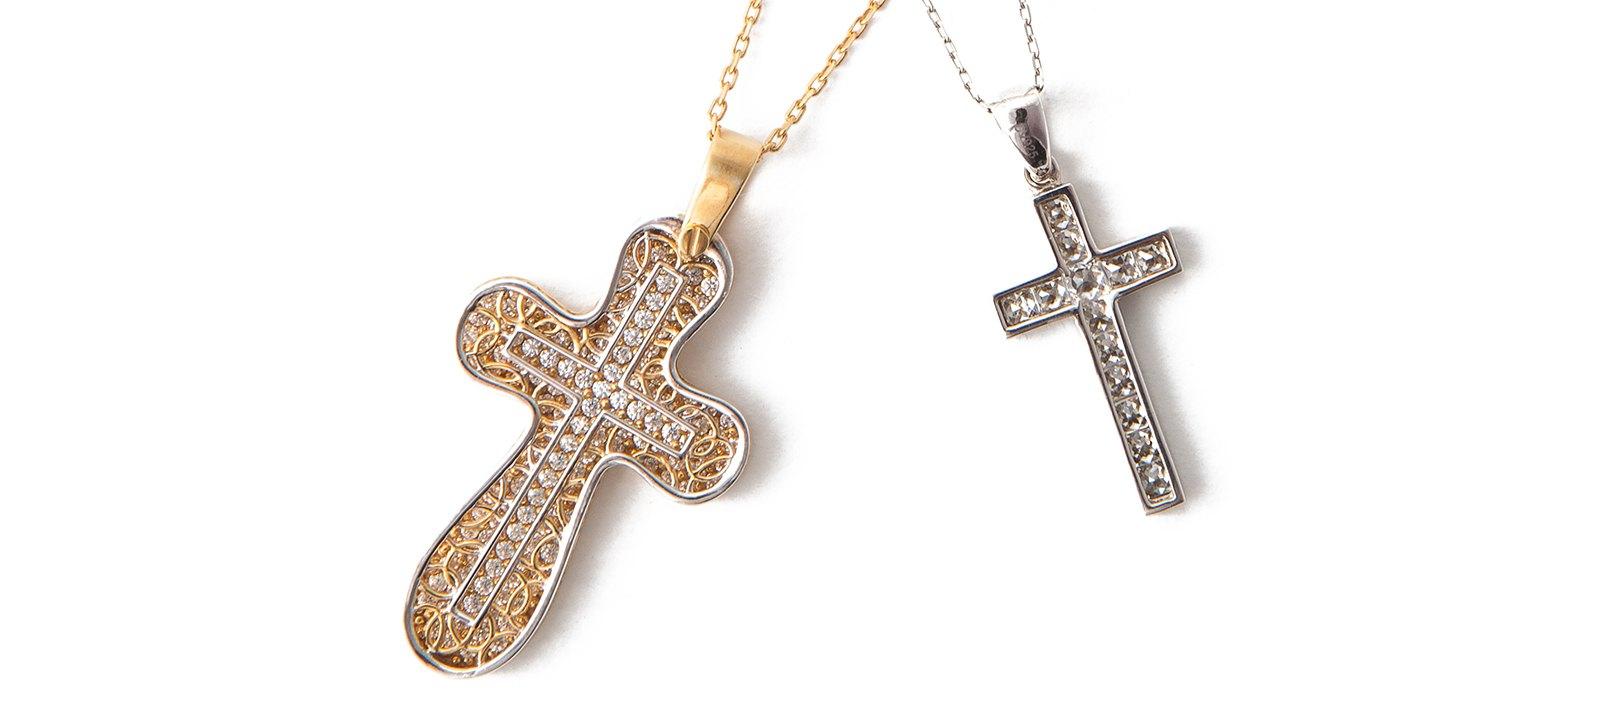 Silver Cross Jewelry